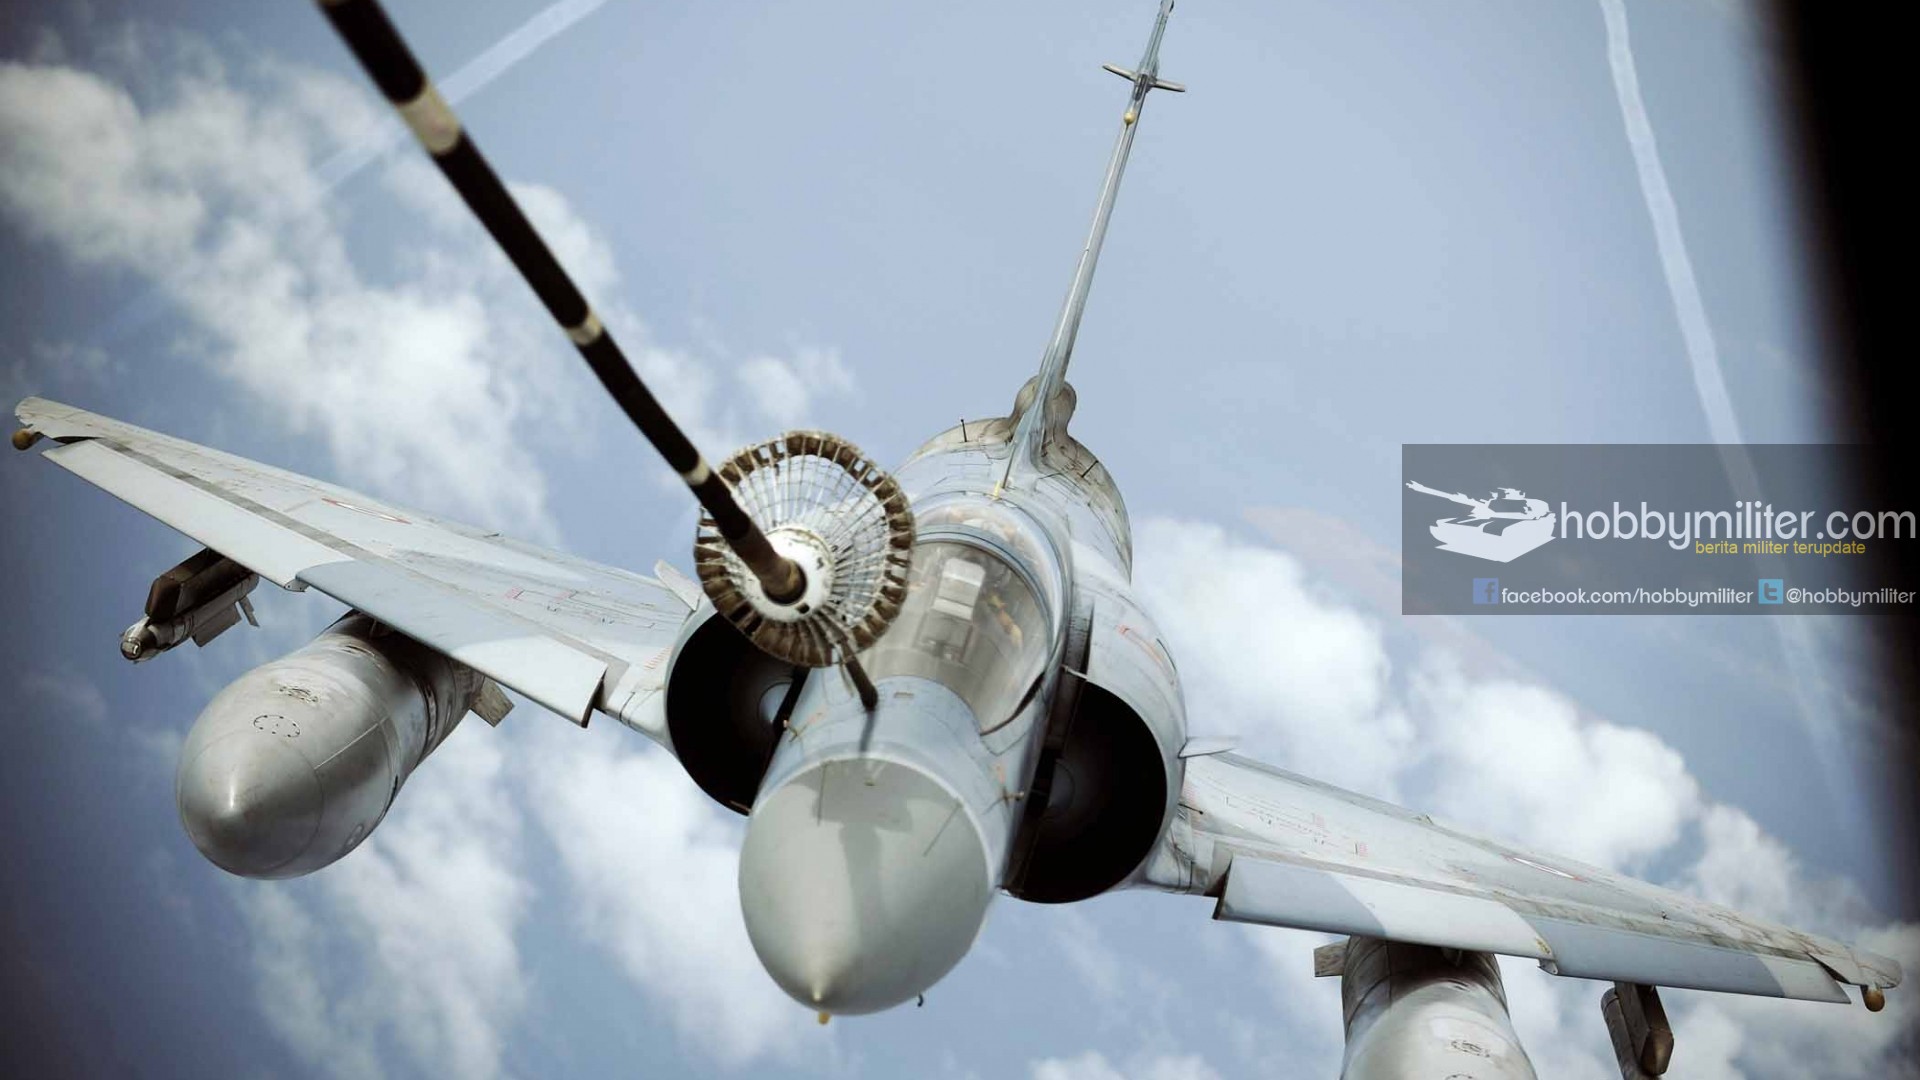 Tahun 2009, Indonesia Nyaris Dapat Satu Skadron Mirage 2000 Gratis Untuk TNI AU